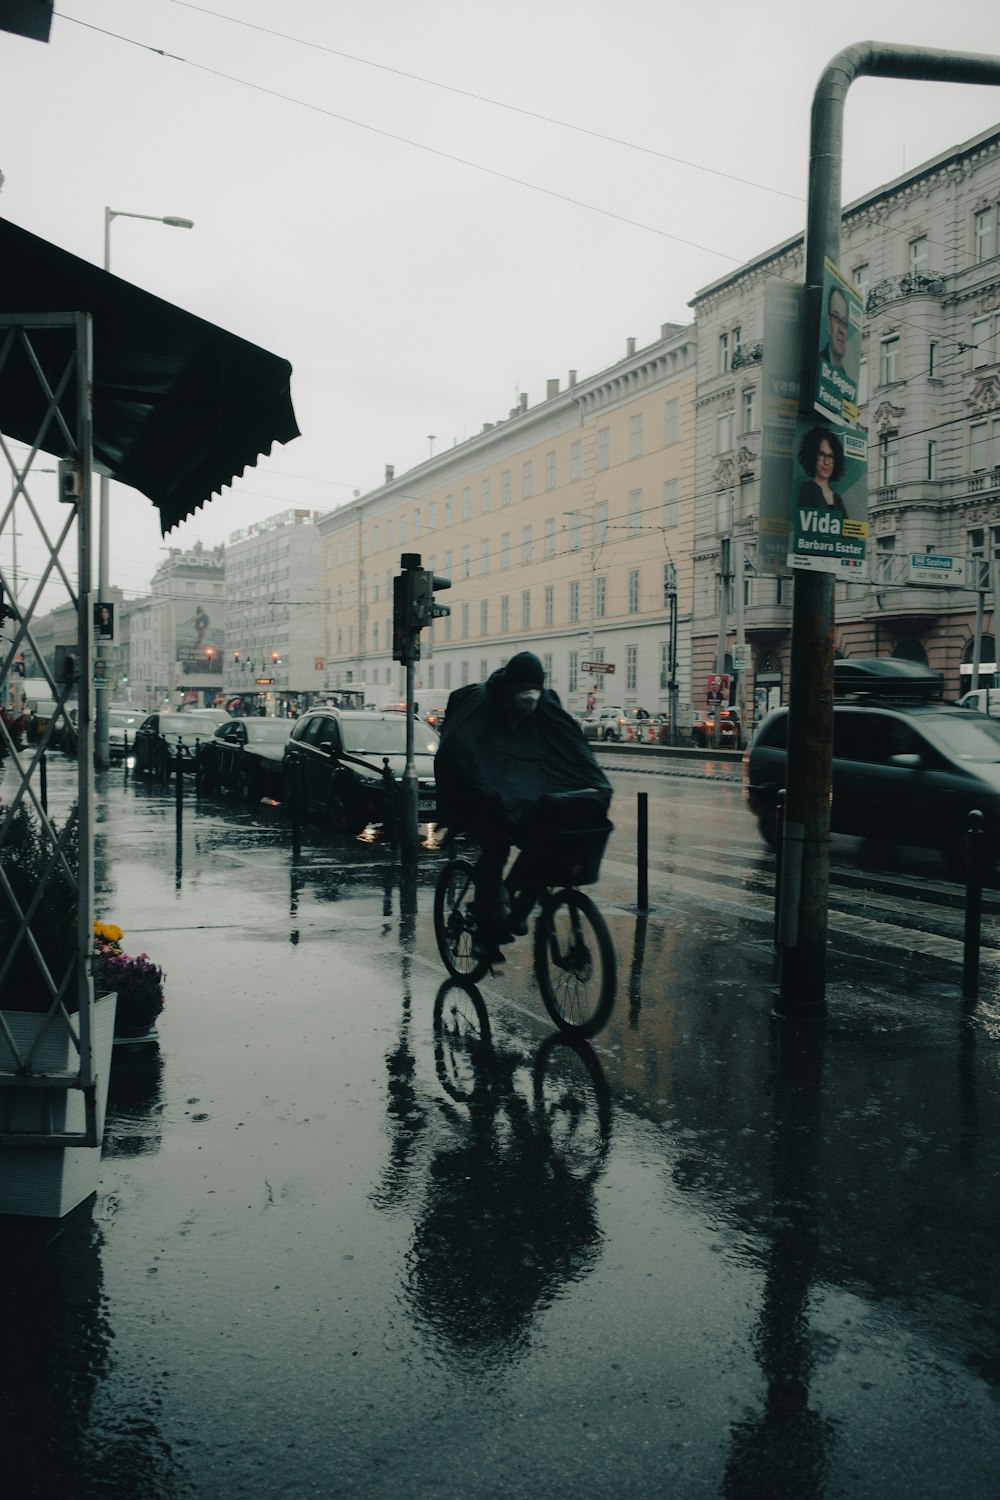 비에 흠뻑 젖은 거리를 자전거를 타고 달리는 사람